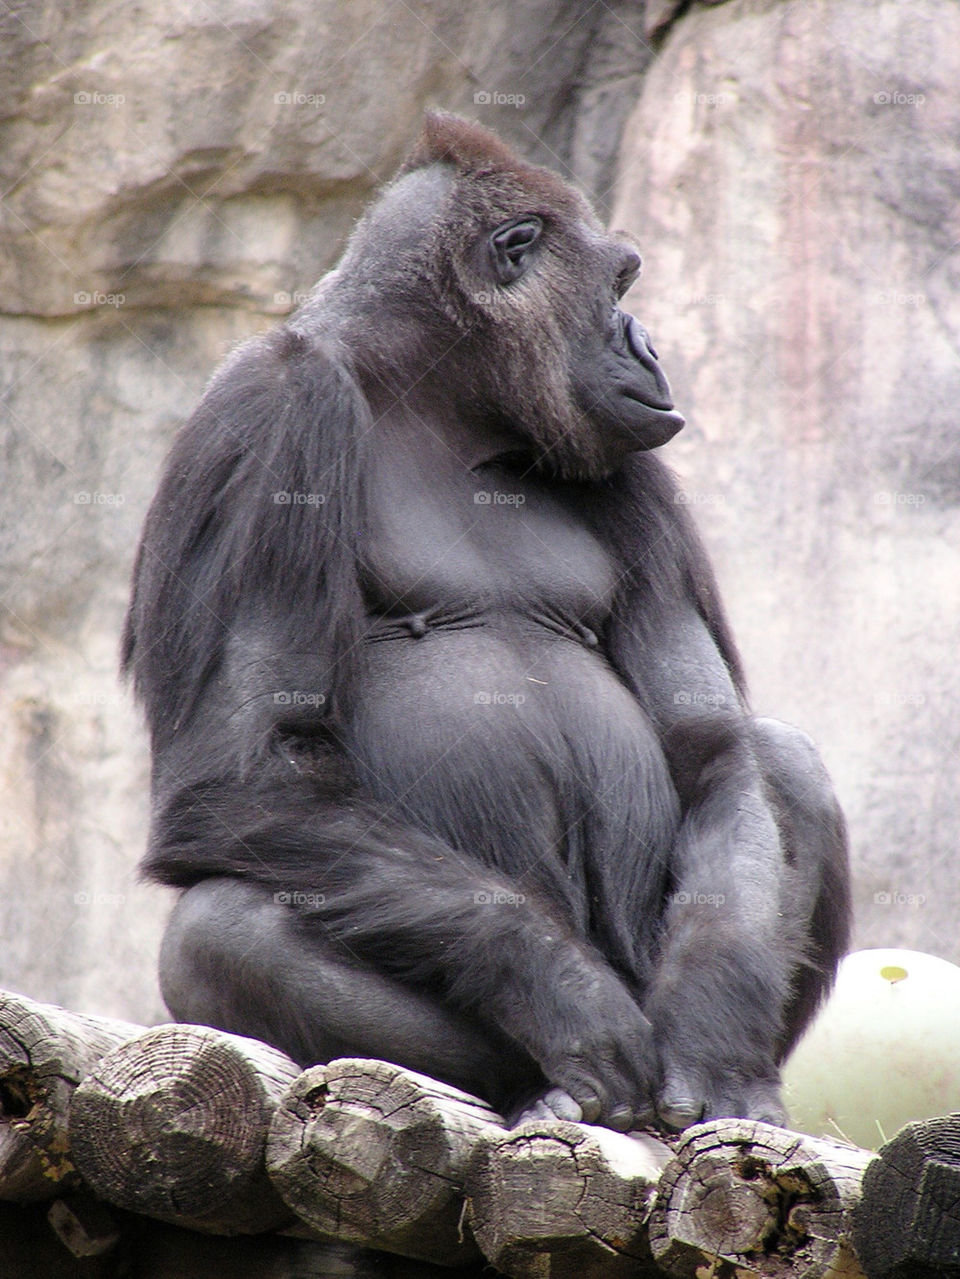 zoo sitting gorilla by buzzsmith